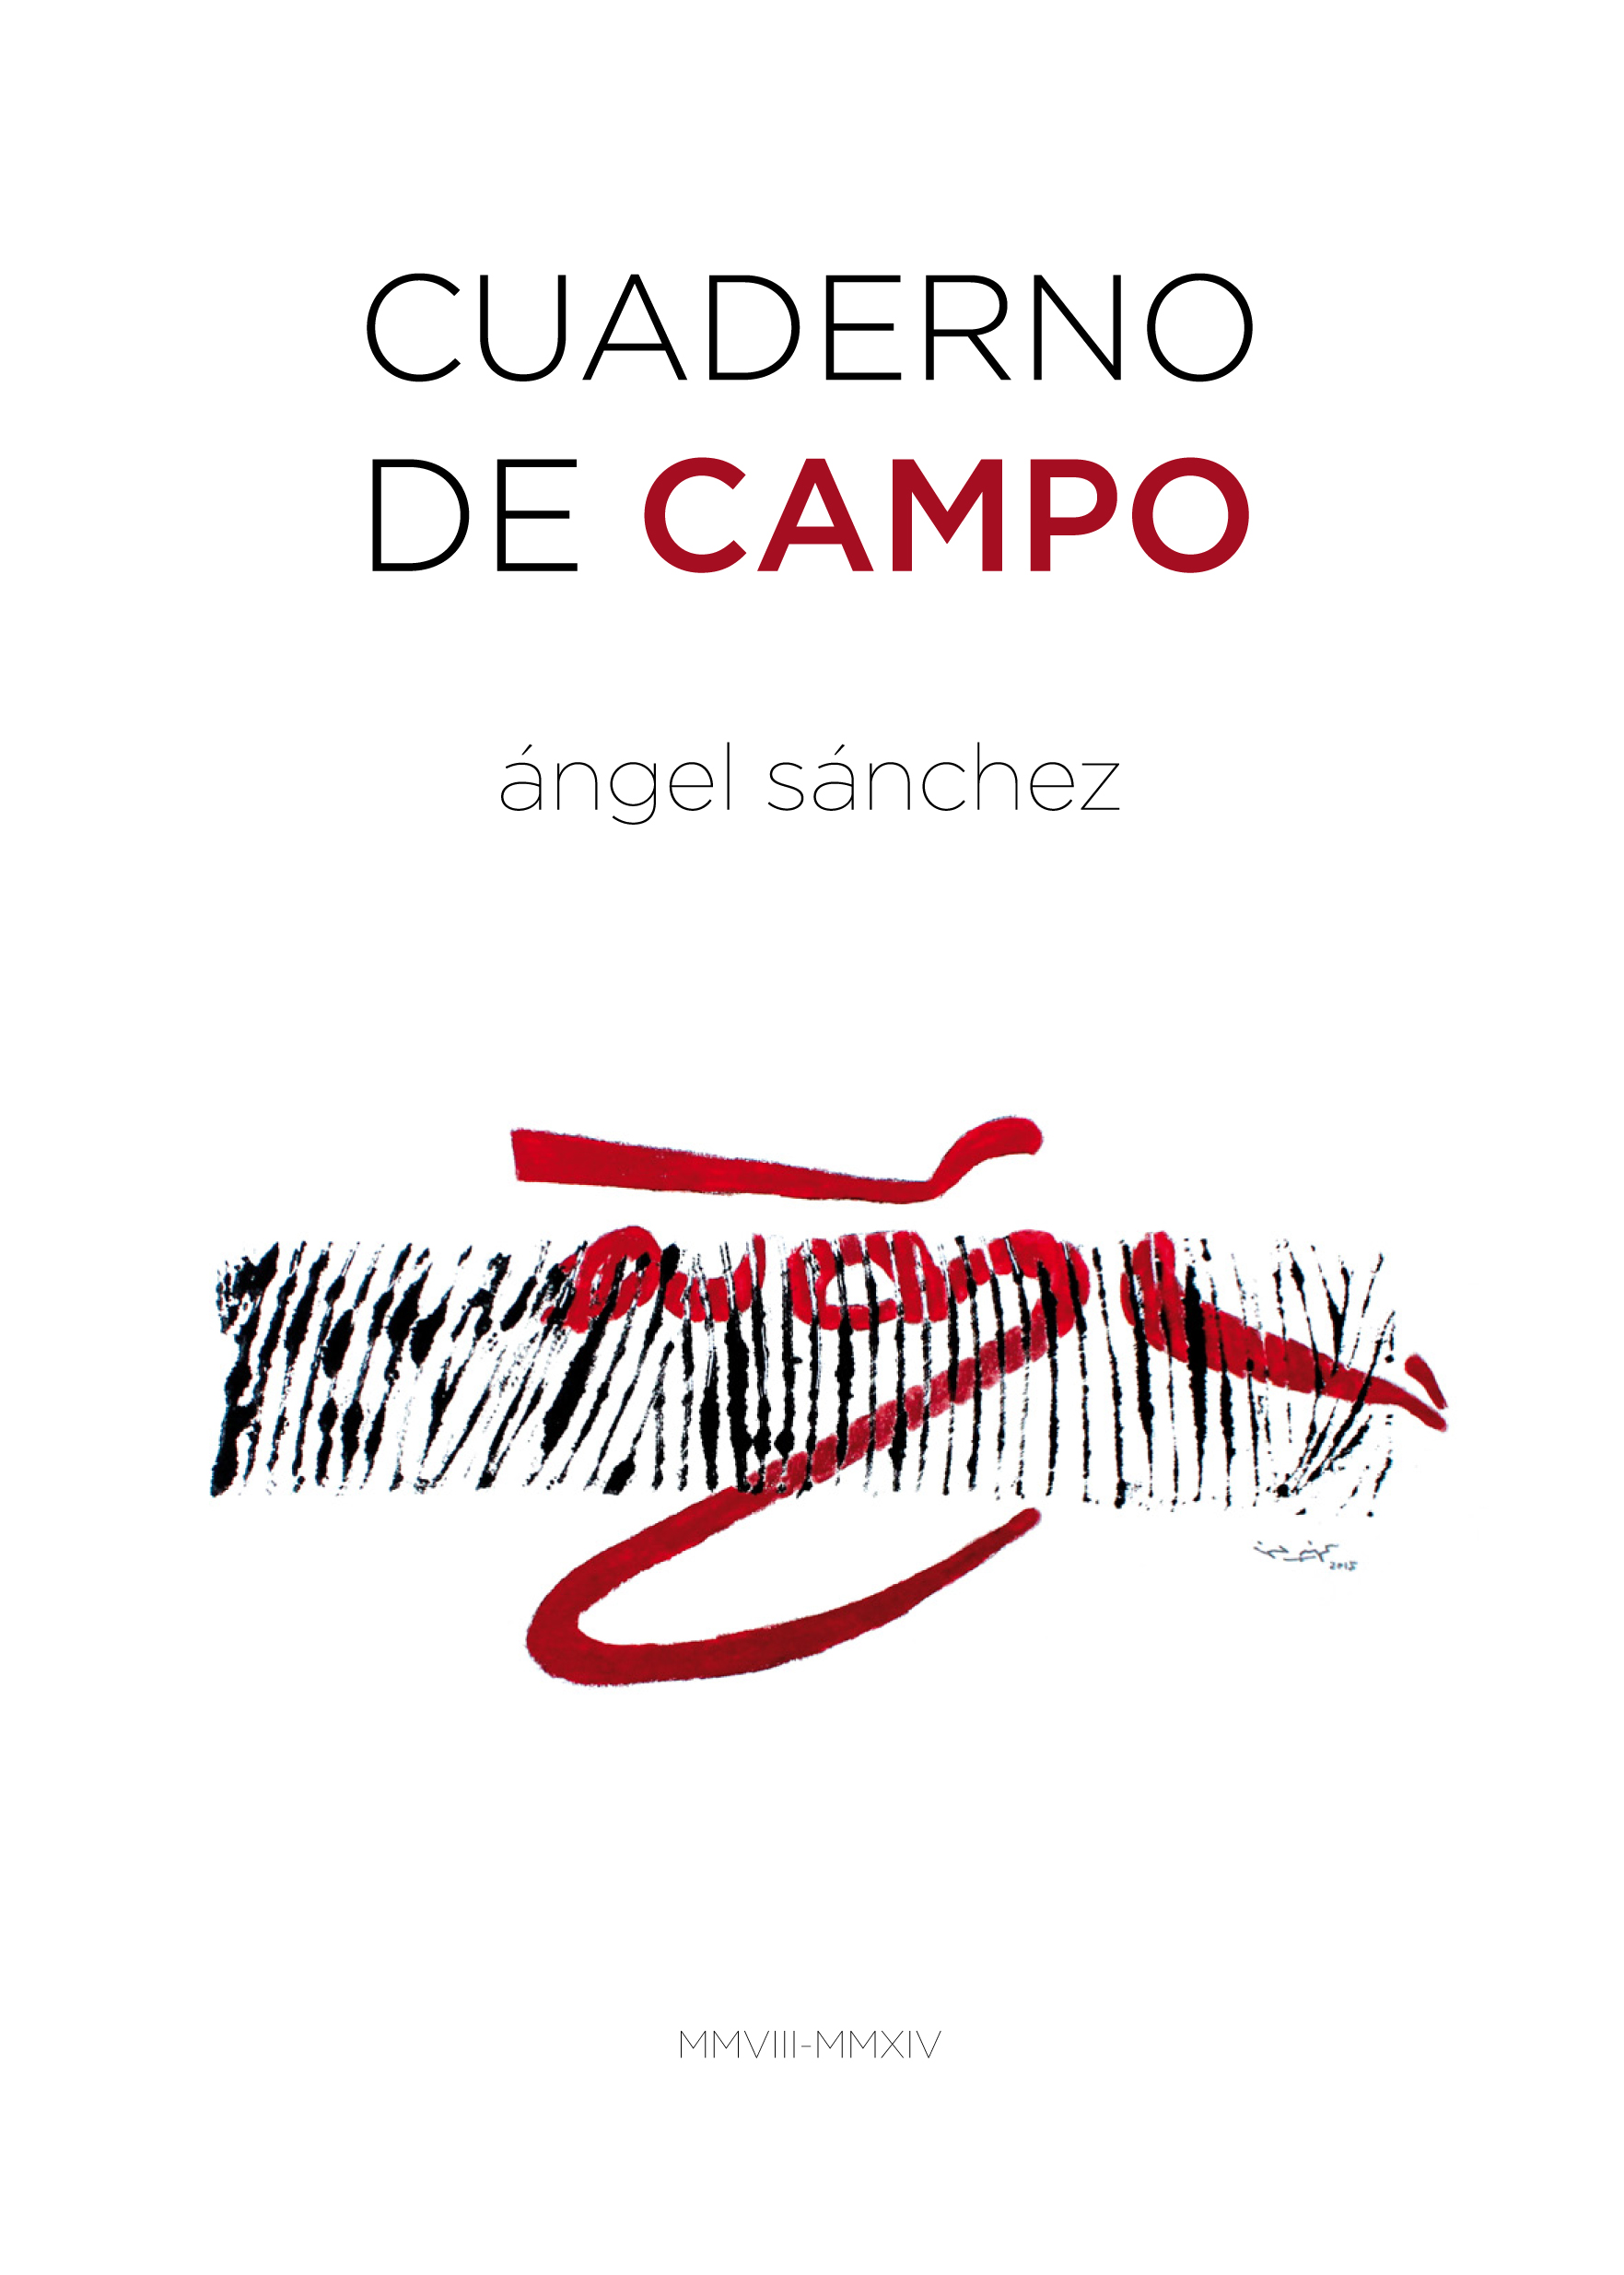 Cubierta de Cuaderno de Campo, de Ángel Sánchez